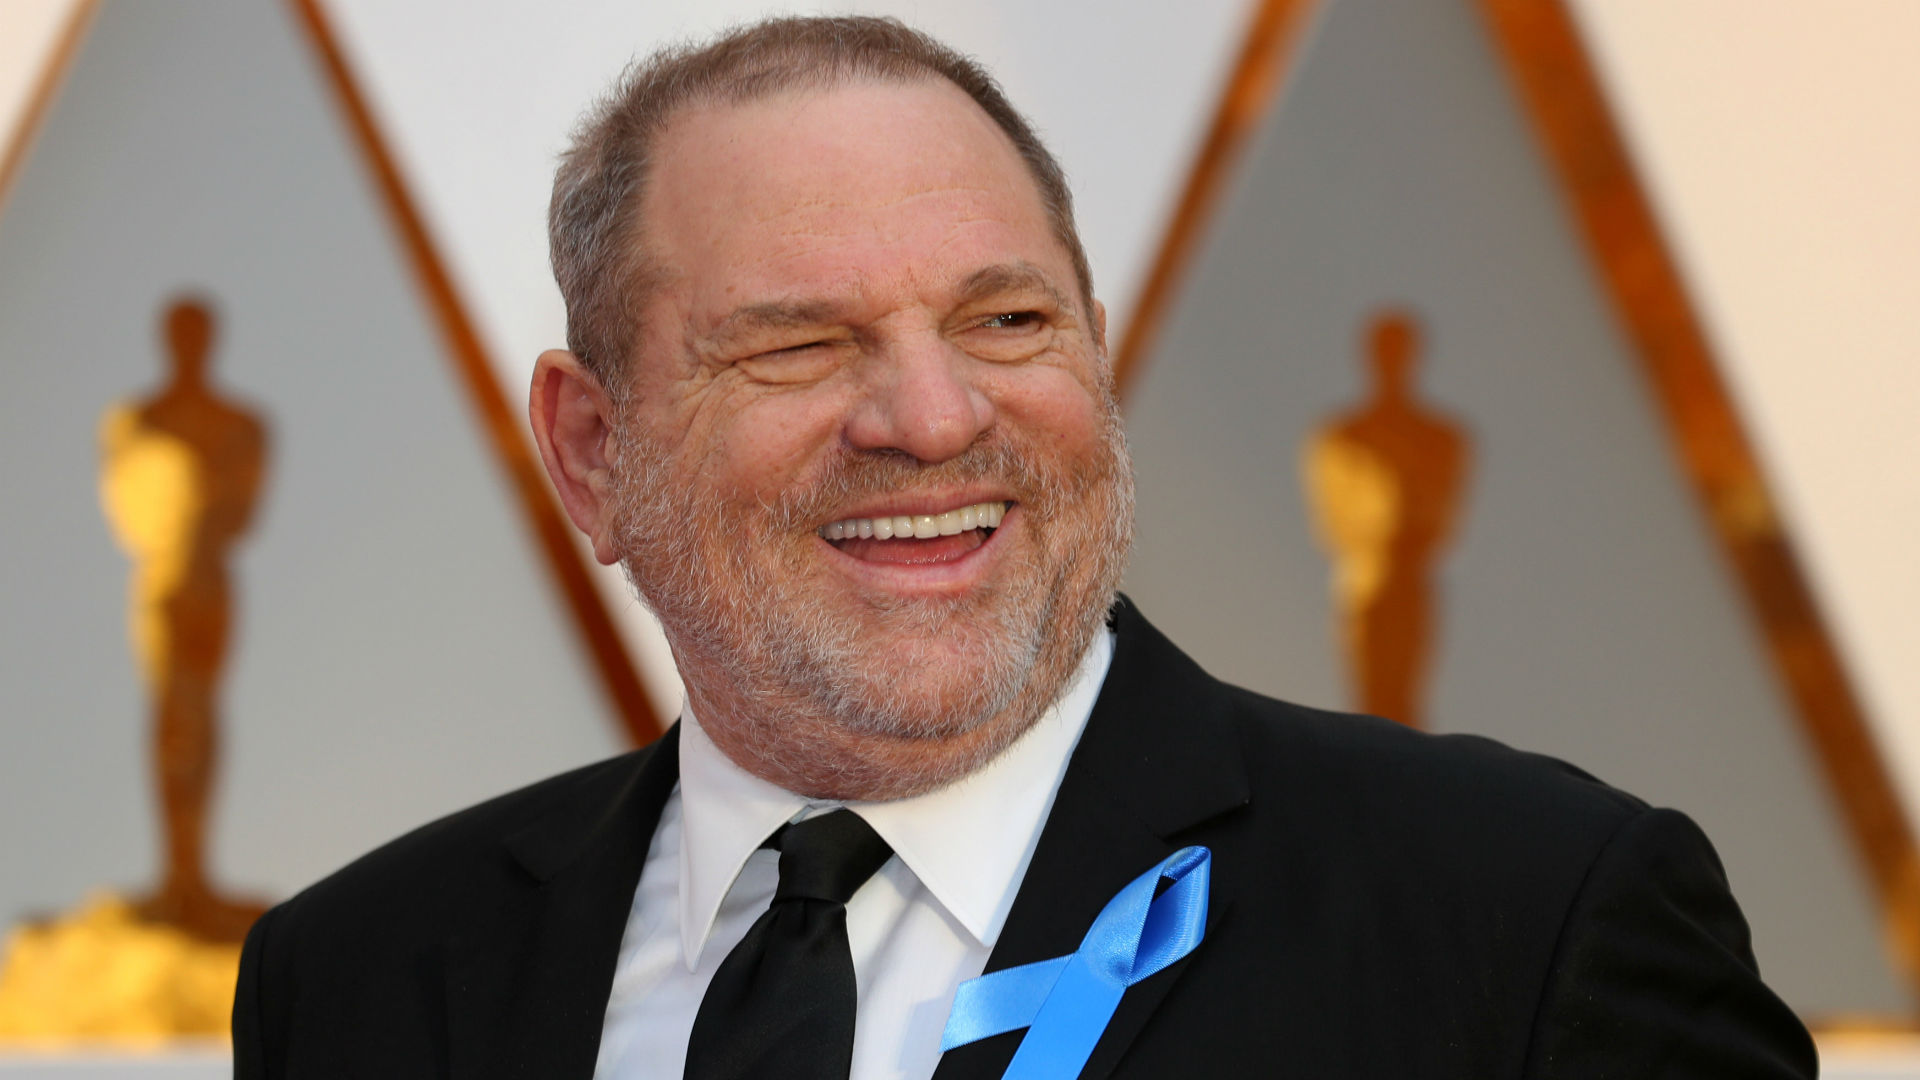 La Academia de Hollywood expulsa a Harvey Weinstein tras el escándalo de acoso sexual